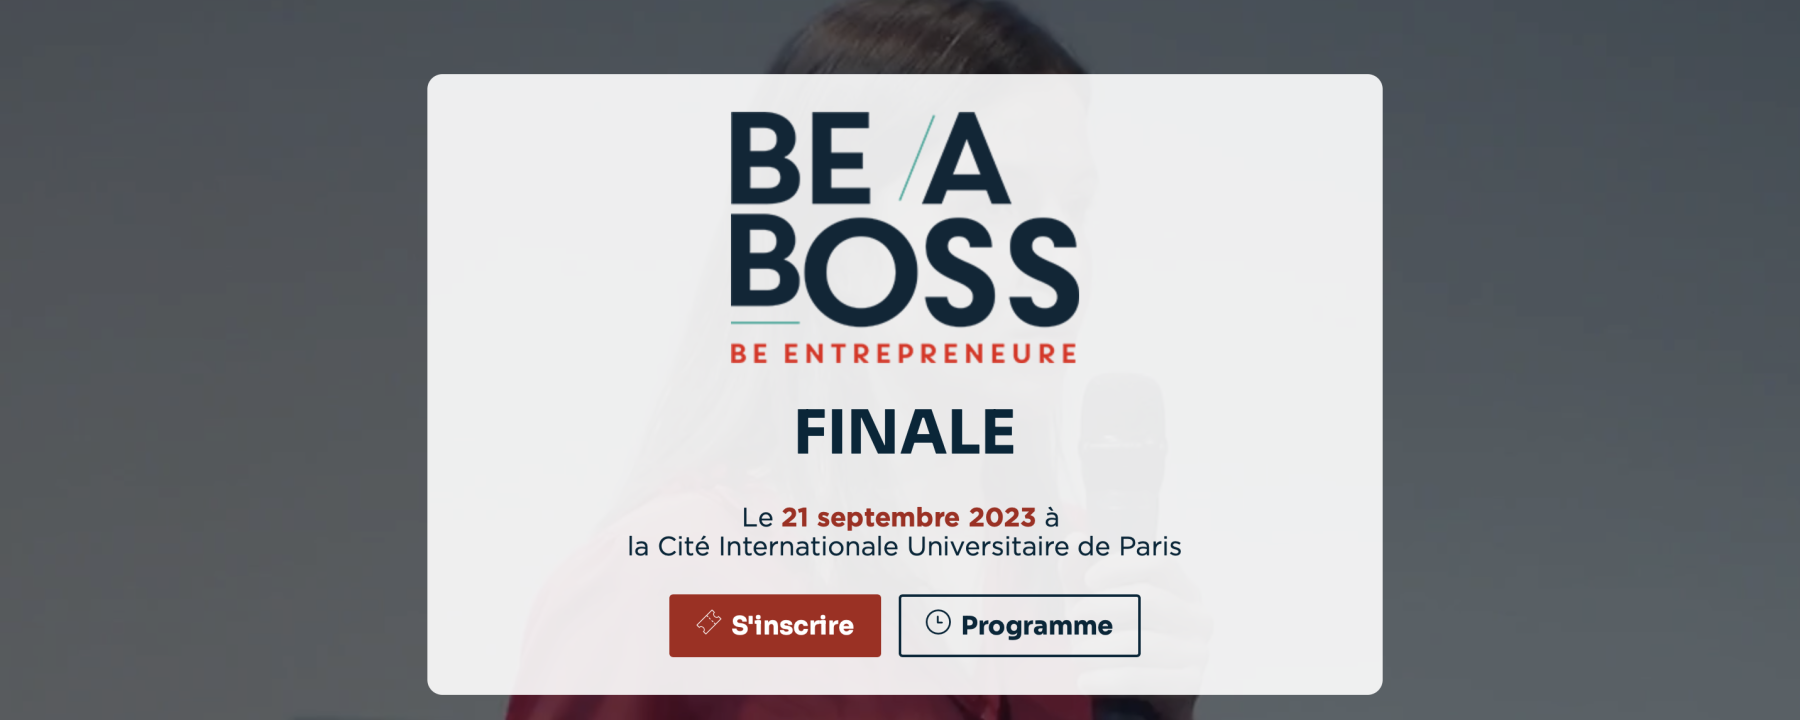 Be a boss 2023 - Finale